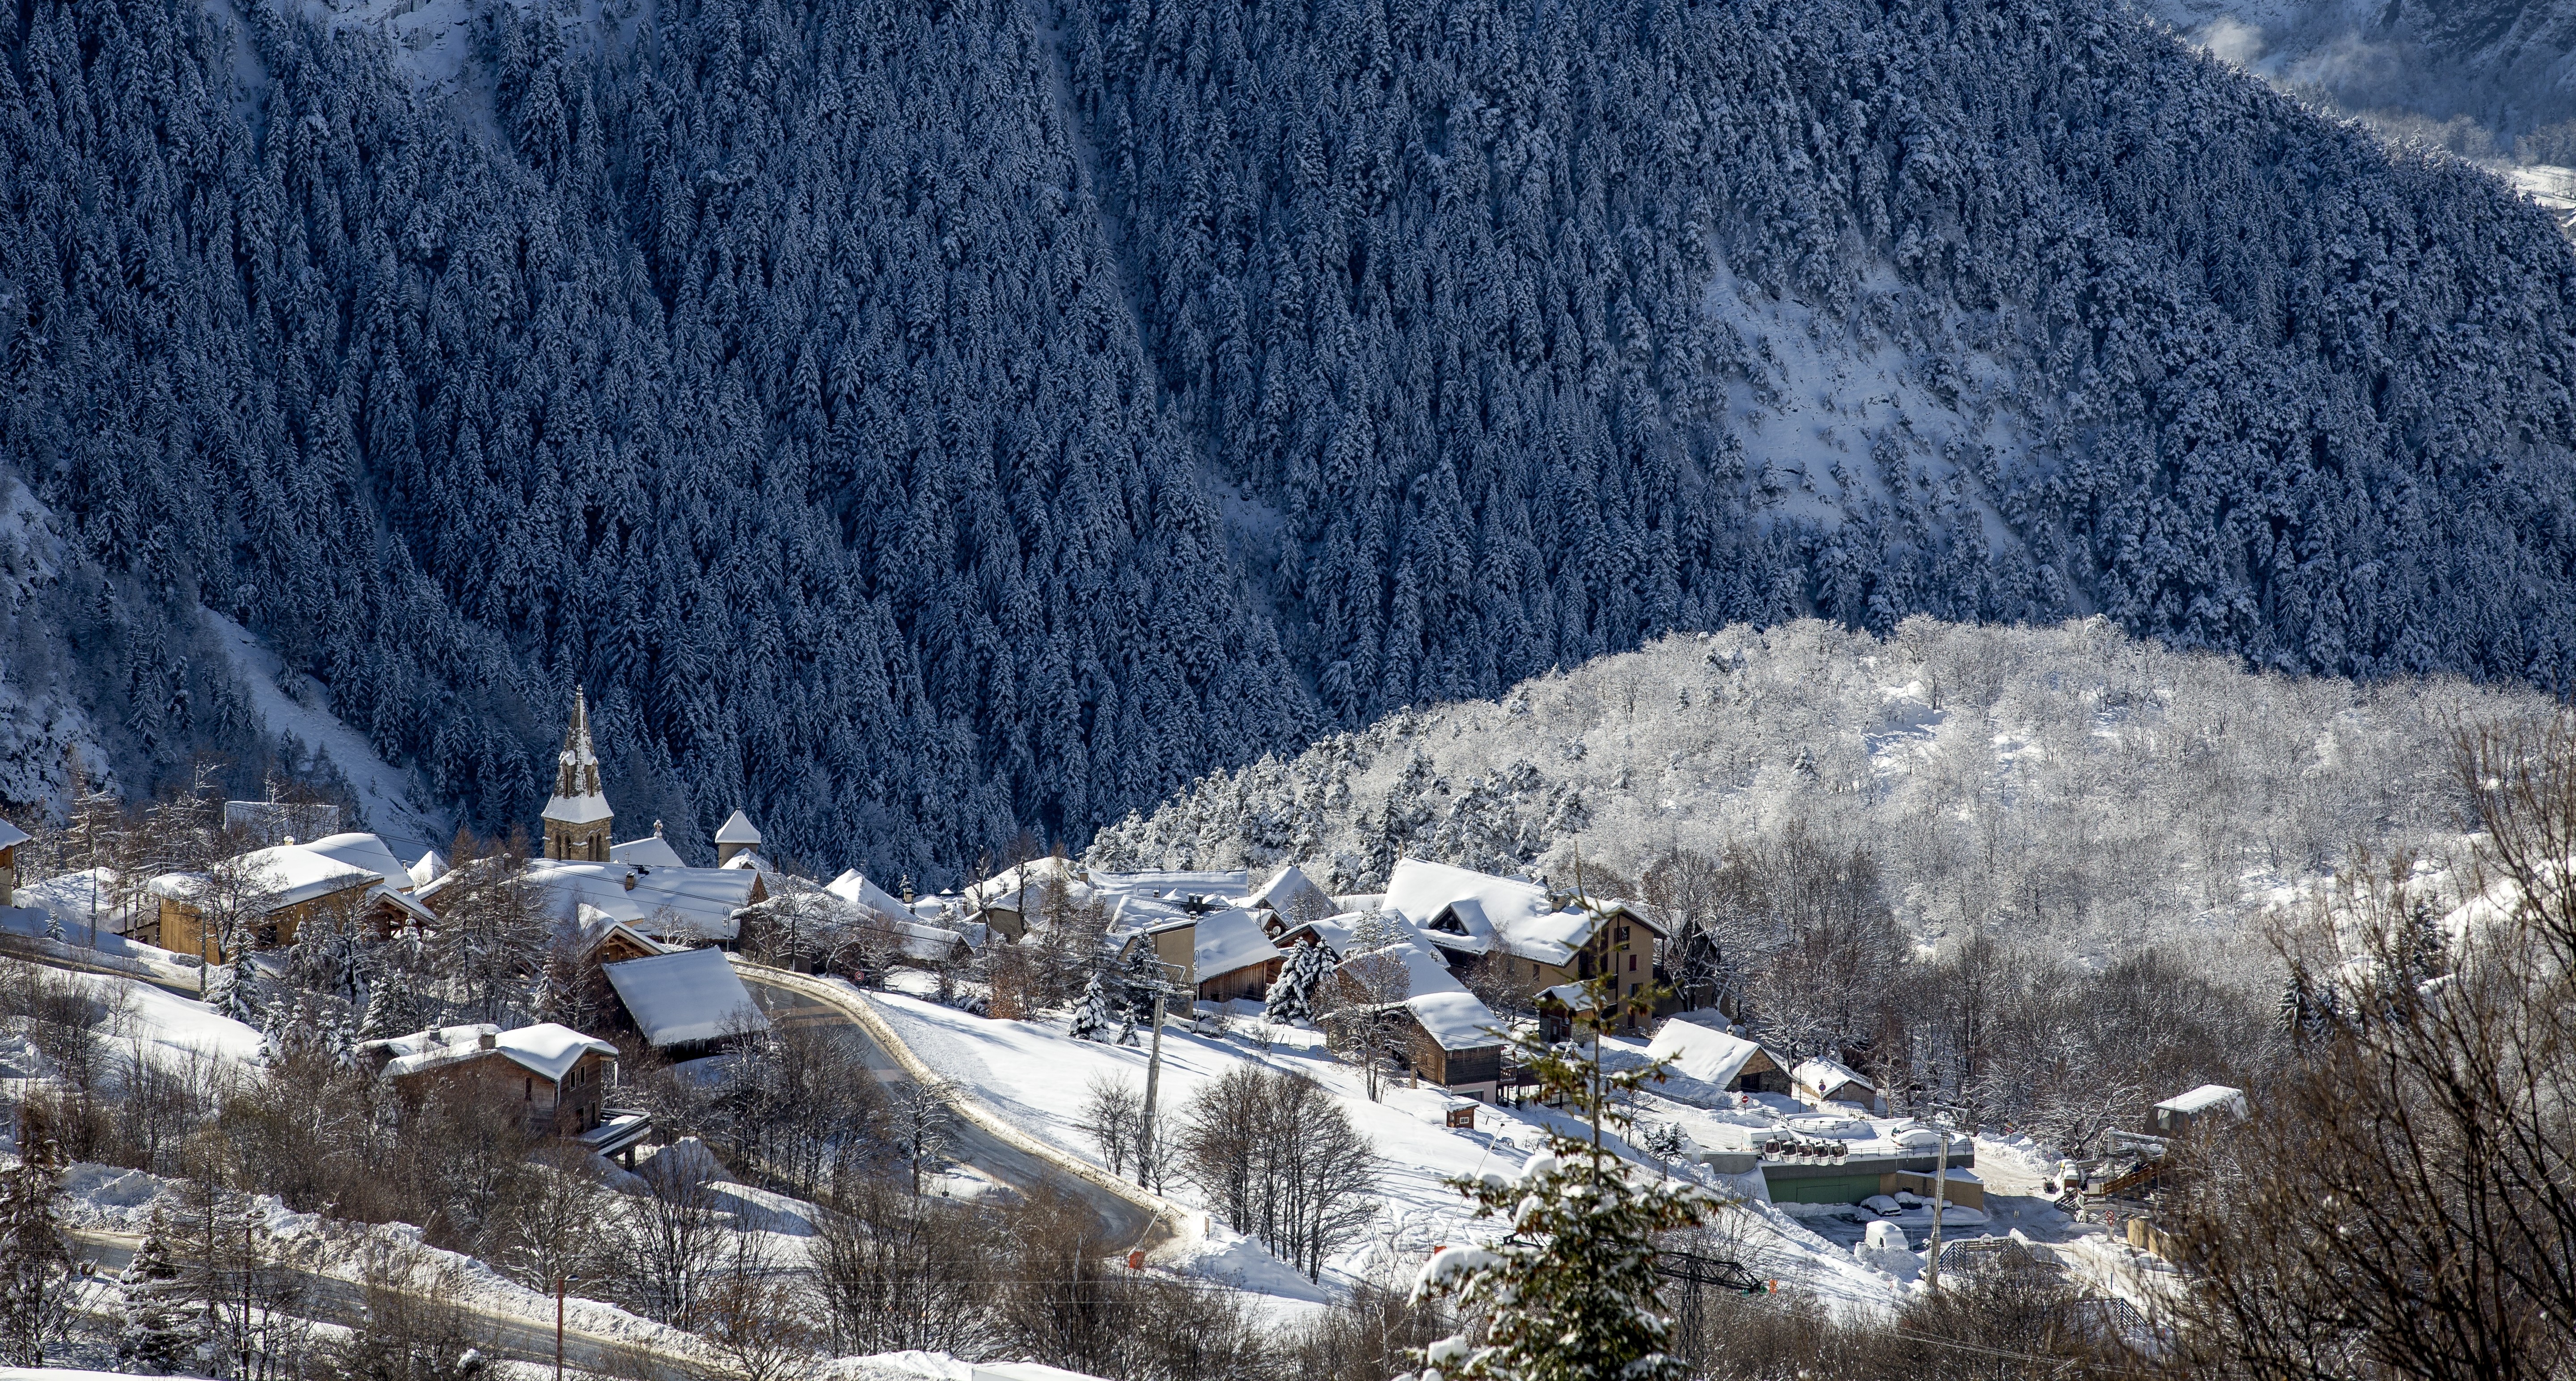 Immobilier au ski français - bilan 2022, perspectives 2023